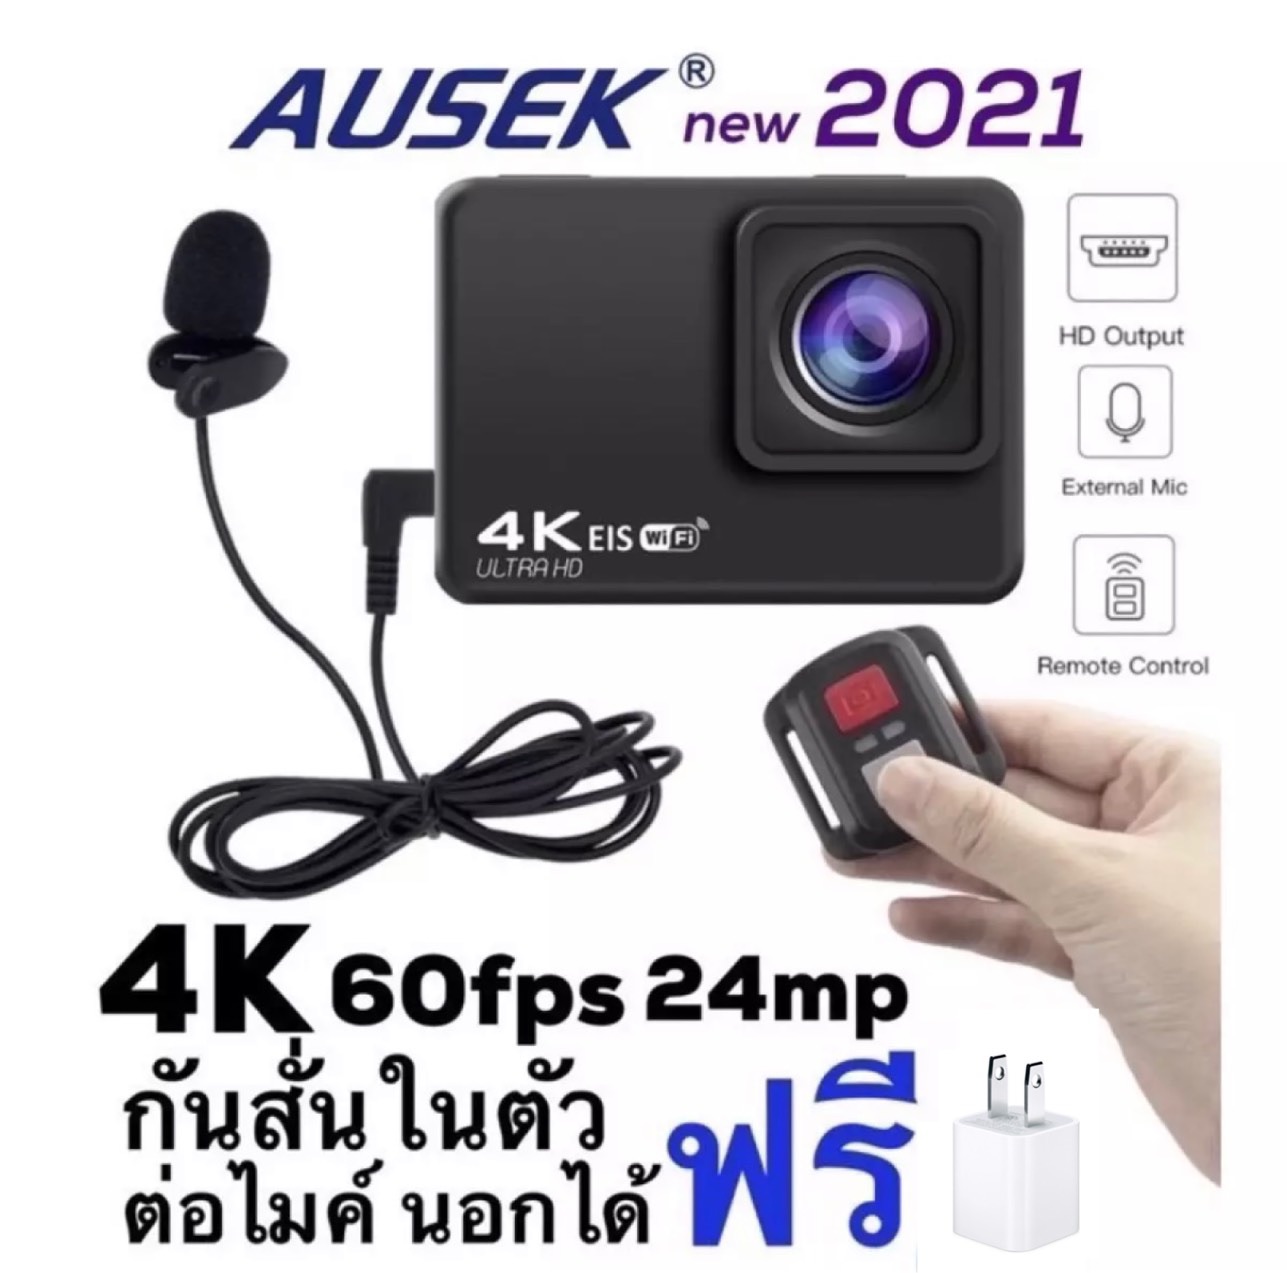 กล้องติดหมวกมอเตอร์ไซร์และถ่ายใต้น้ำ AUSEK 4K AT-Q37C allwinner V316 ACTIONCAMERA มีระบบกันสั่นและ ต่อMICนอกได้  EKENทำไม่ได้